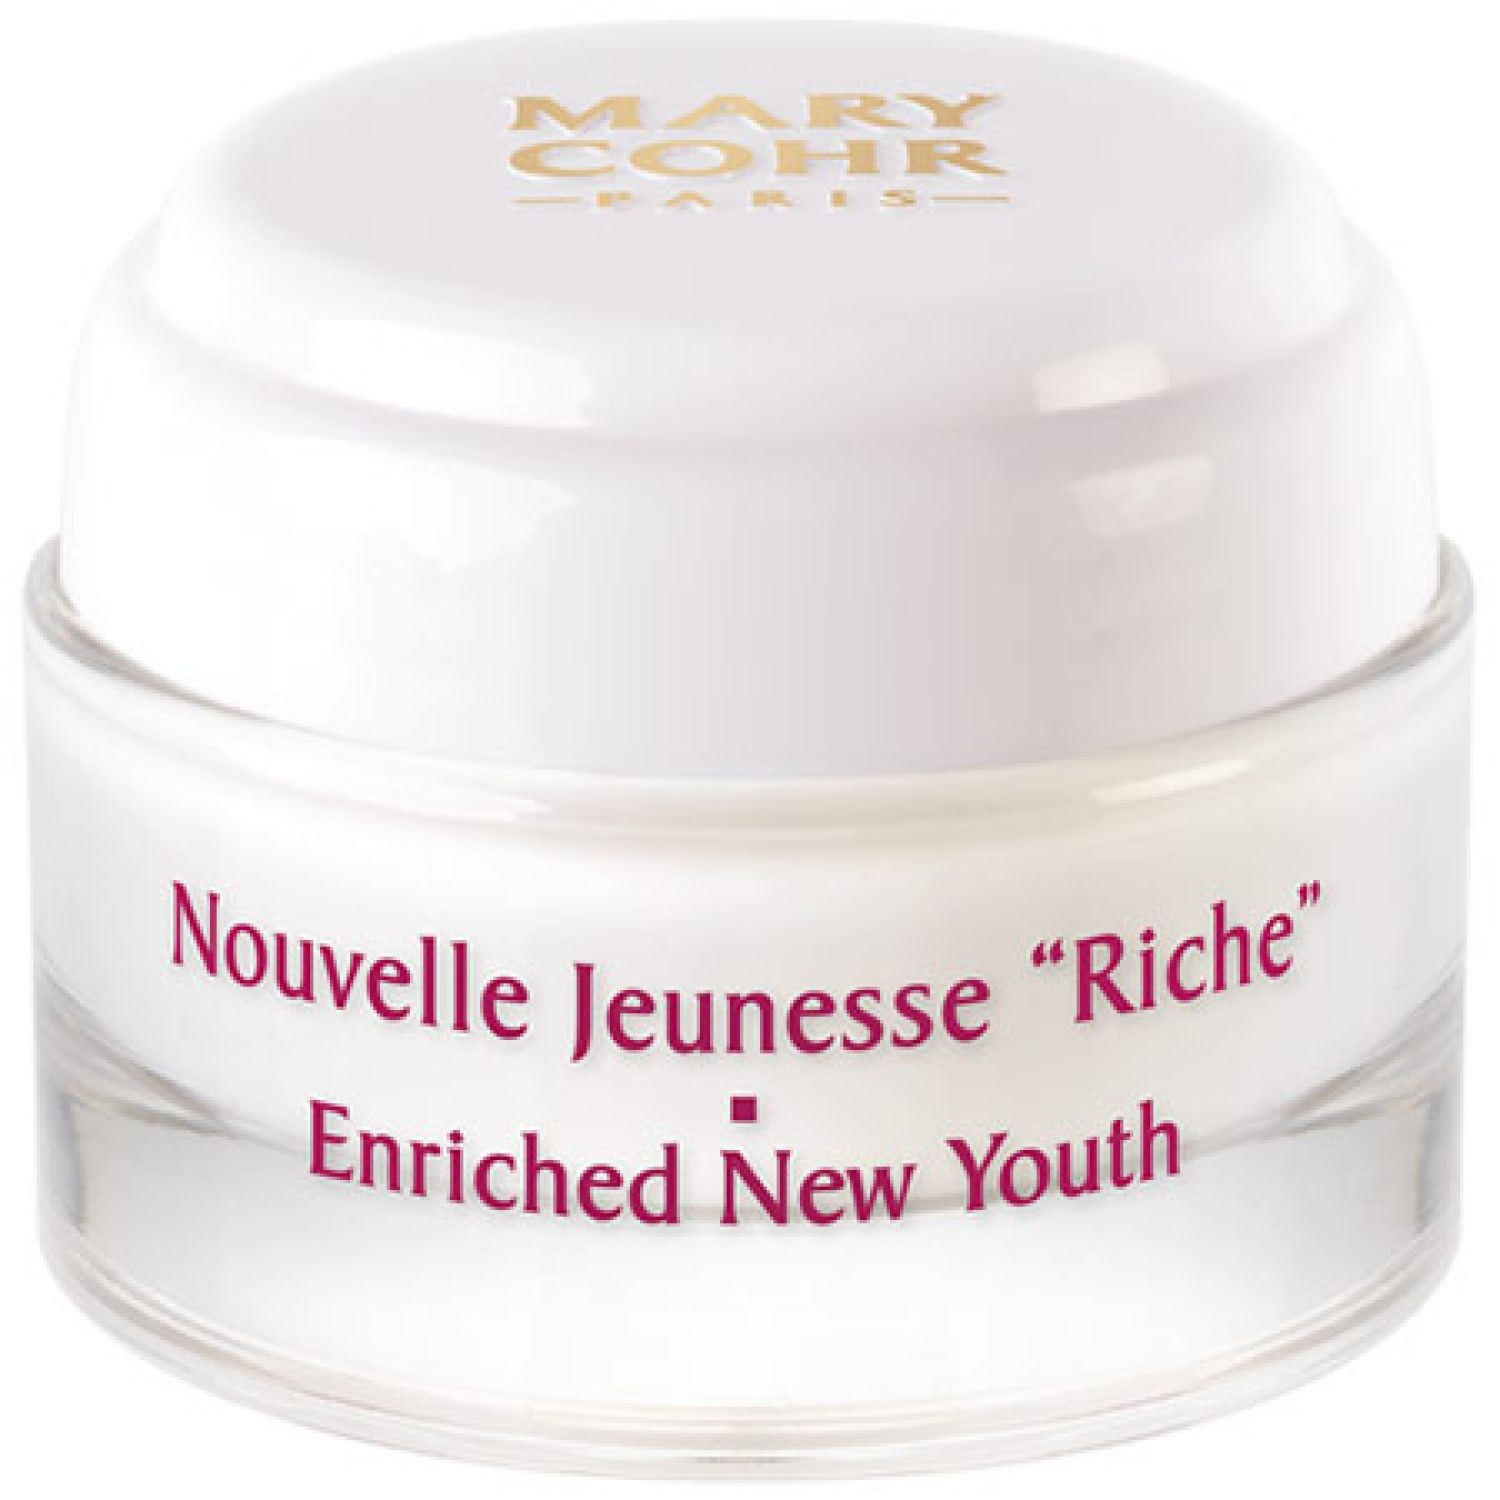 Mary Cohr Paris Nouvelle Jeunesse Riche-Enriched New Youth Cream